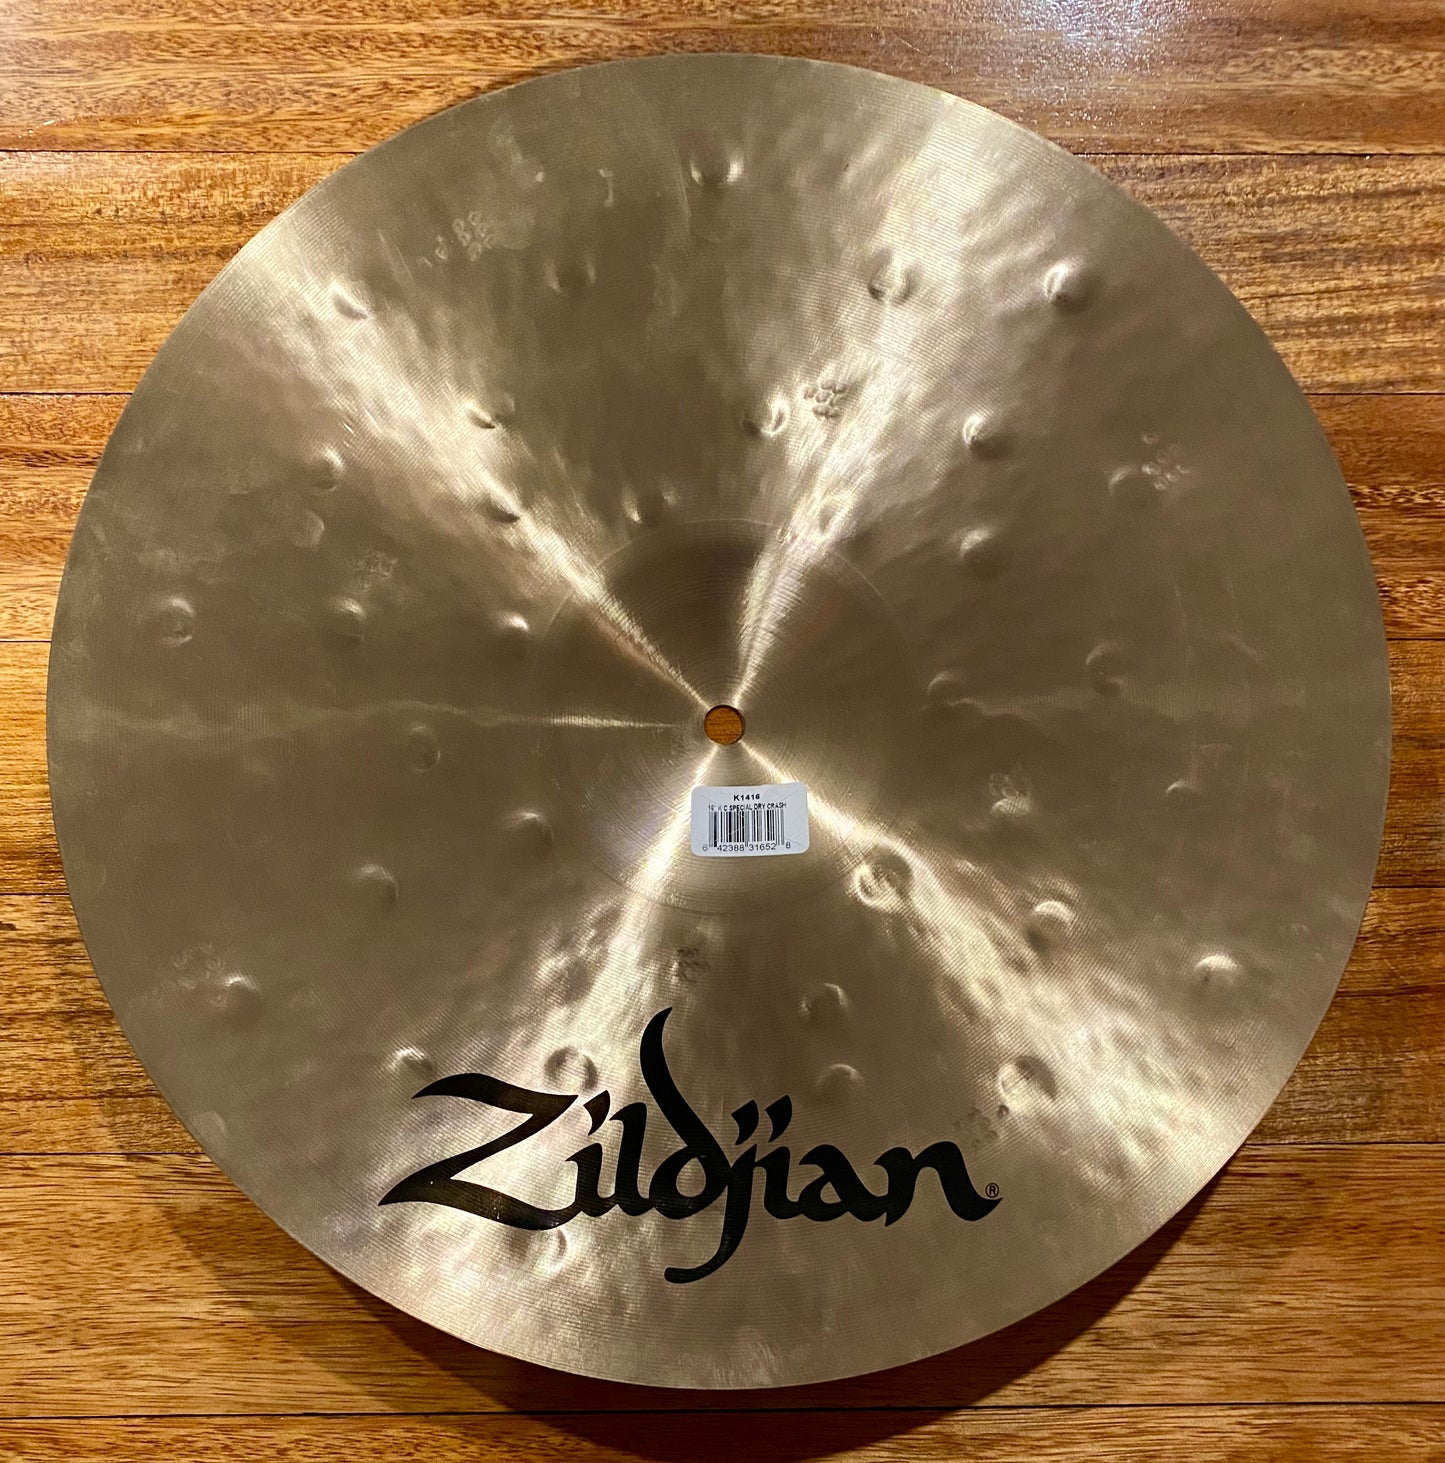 Zildjian K Custom Special Dry 16 Inch Crash Cymbal K1416